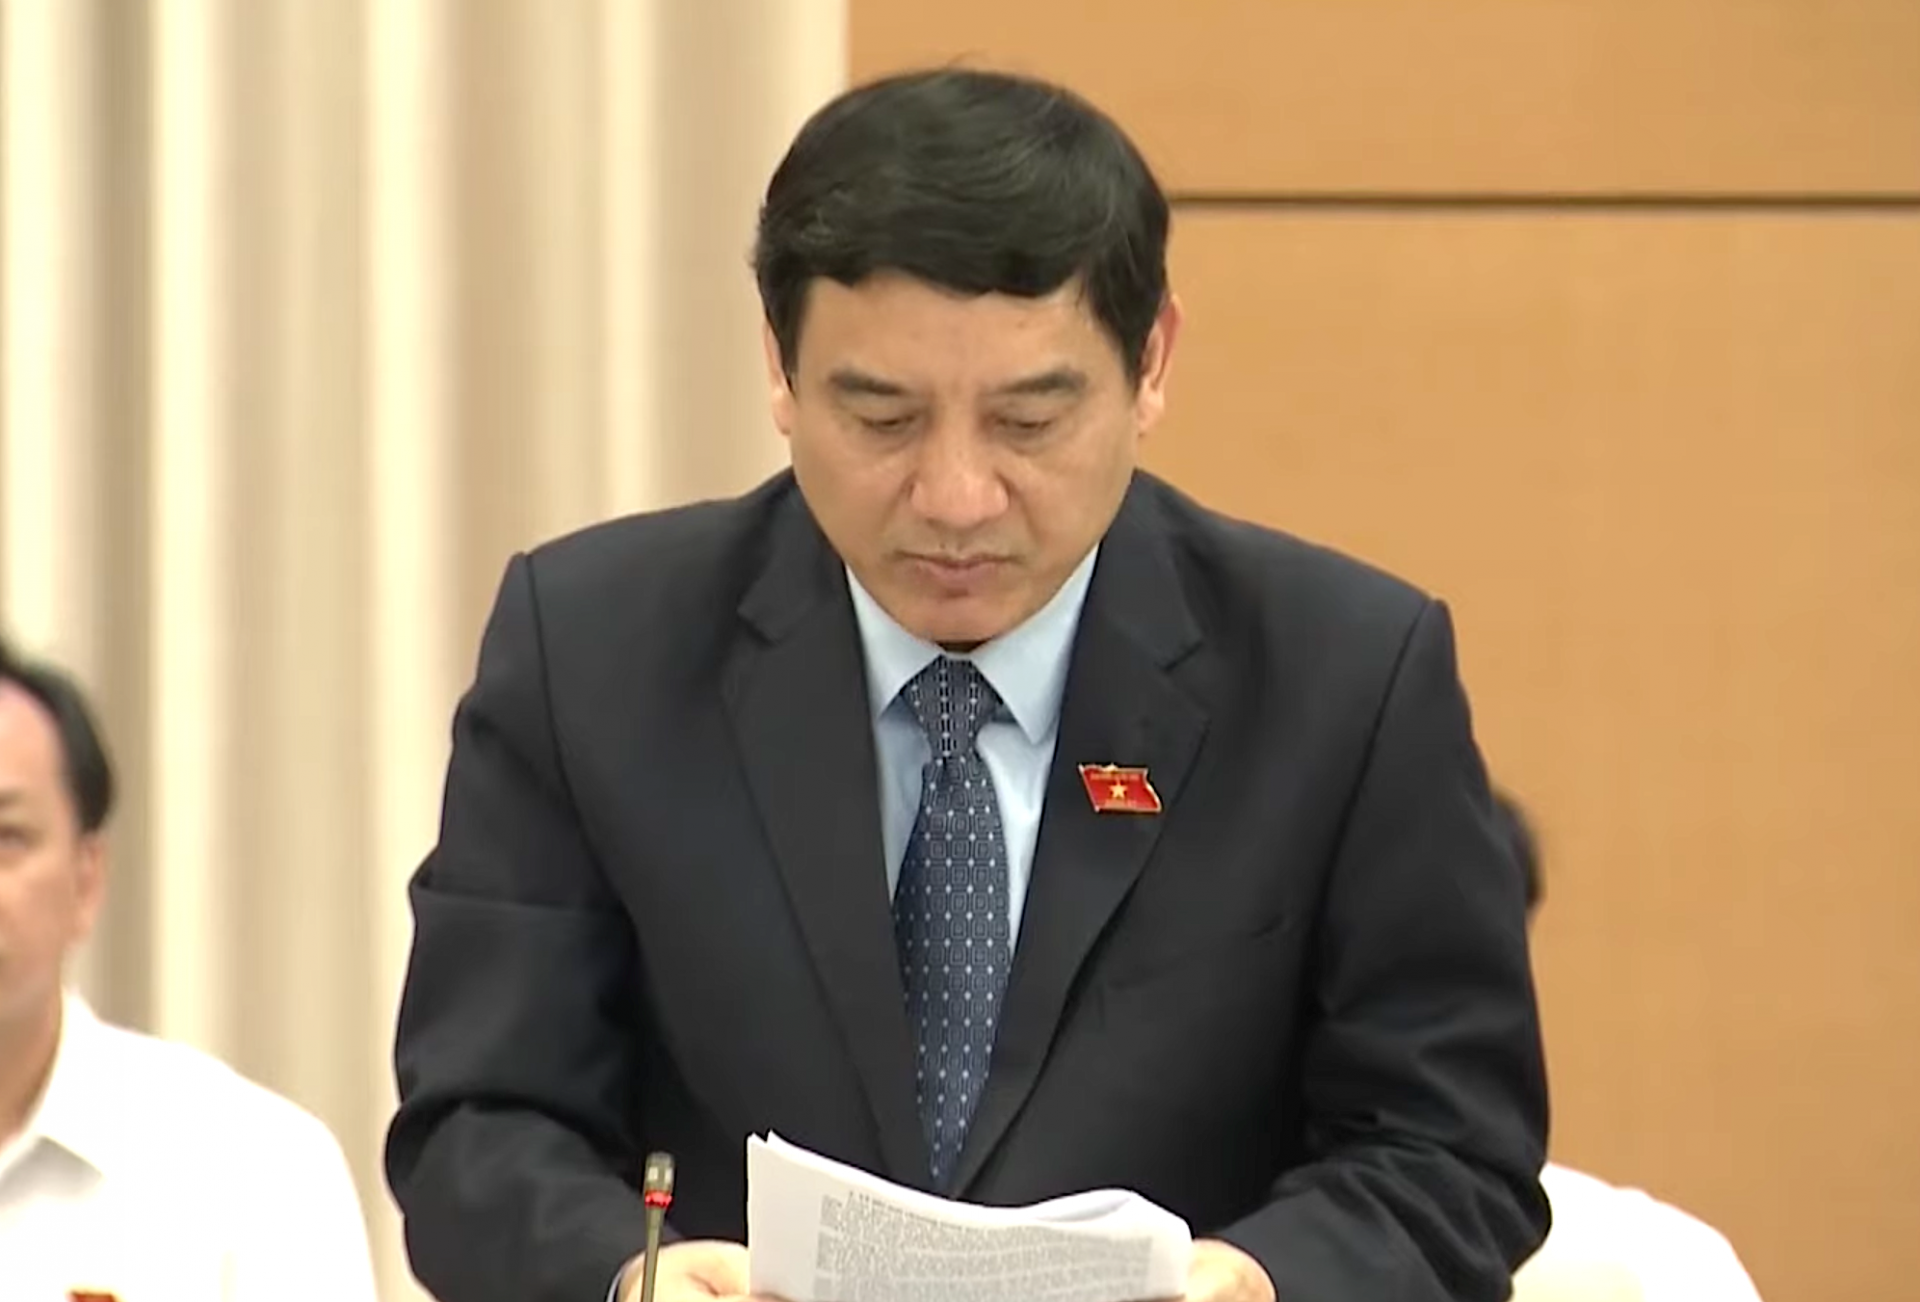 Ông Nguyễn Đắc Vinh, Chủ nhiệm Uỷ ban Văn hoá, Giáo dục của Quốc hội báo cáo kết quả giám sát chiều 14/8.